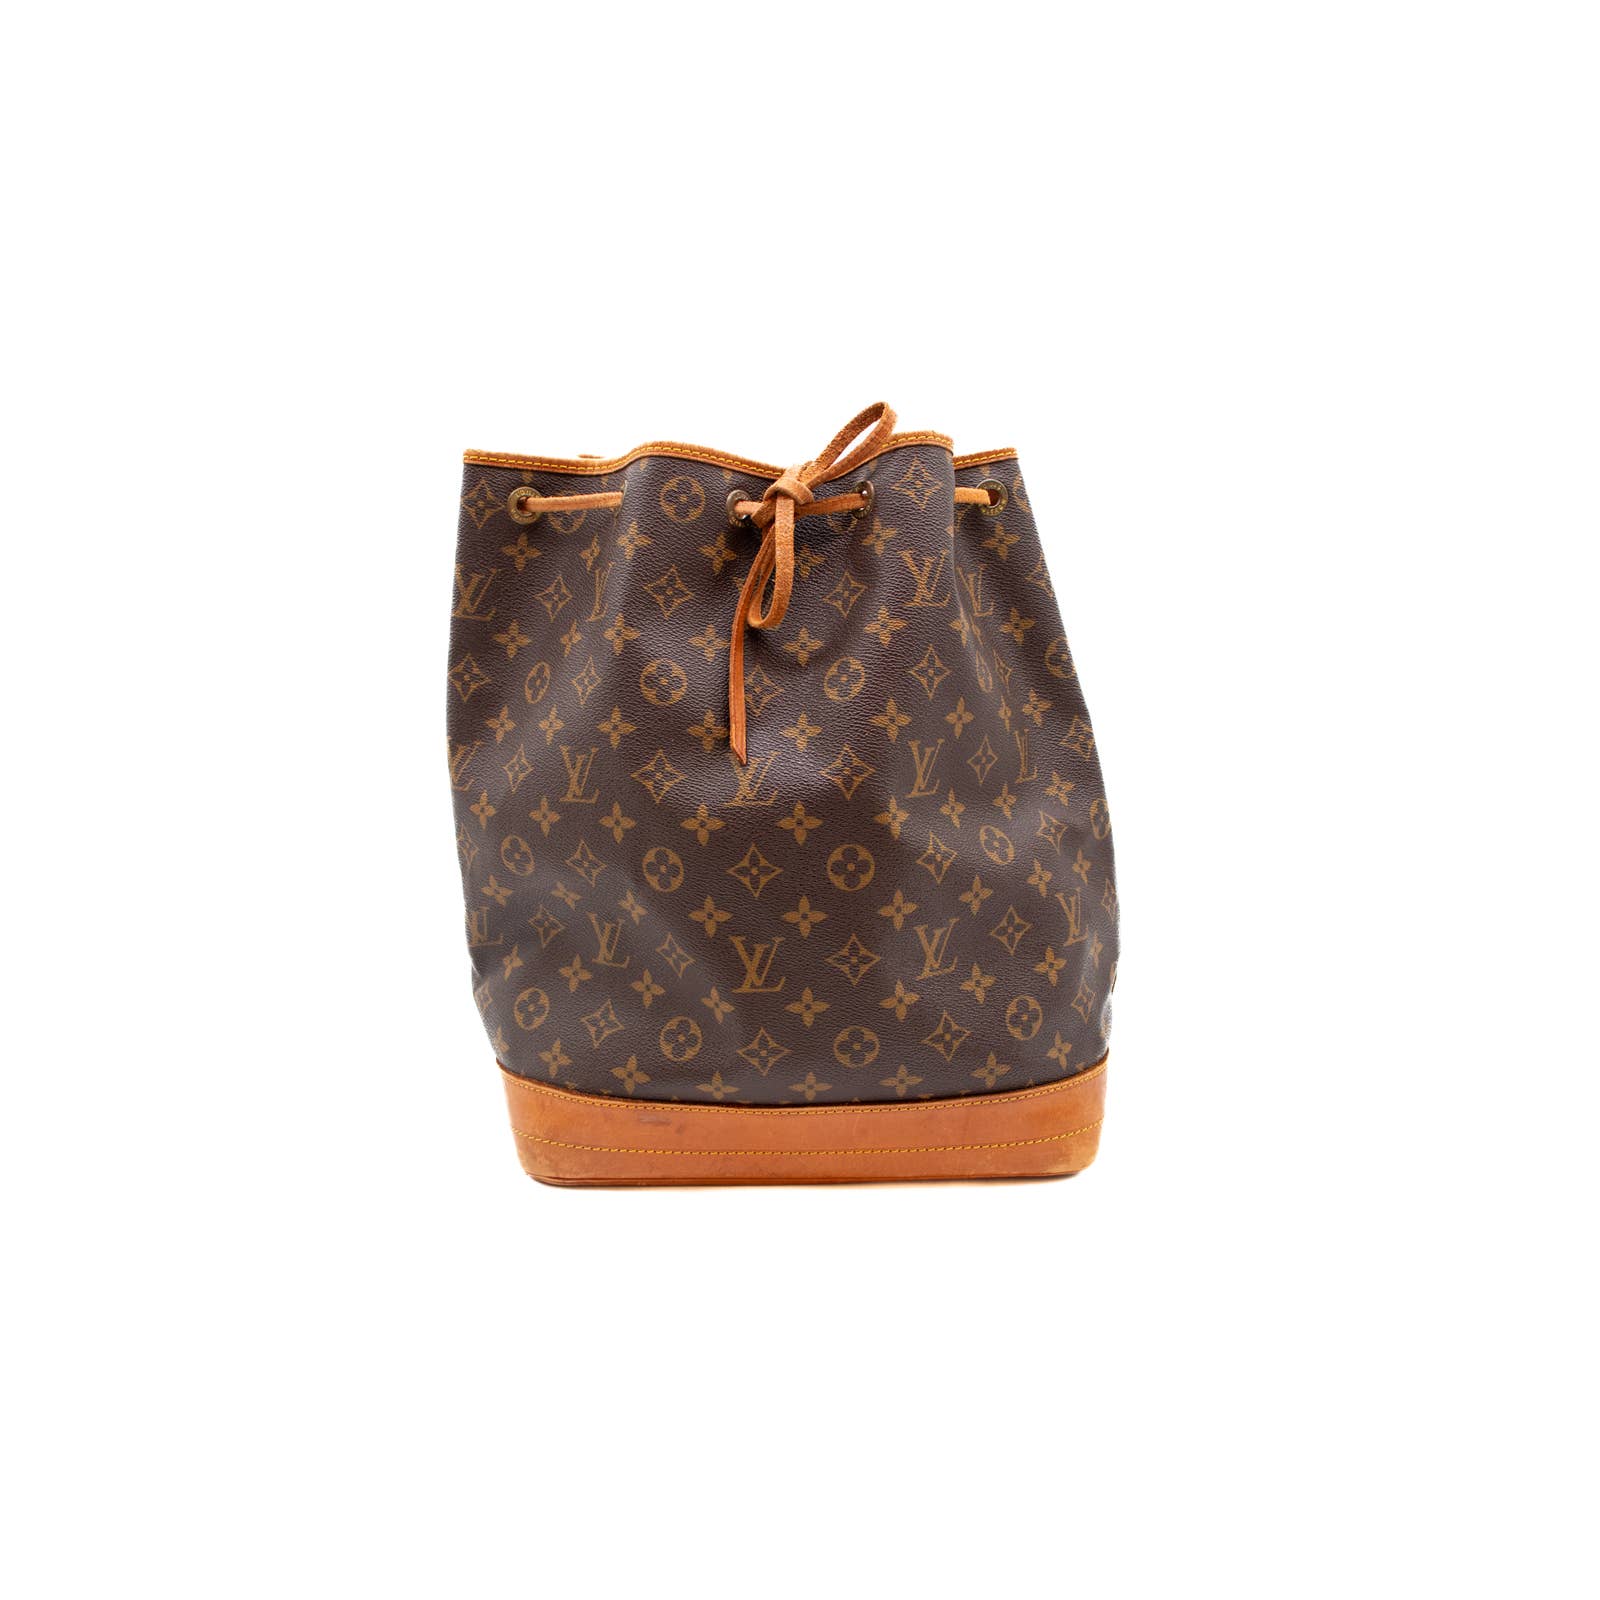 Louis Vuitton Sac Noé Handbag